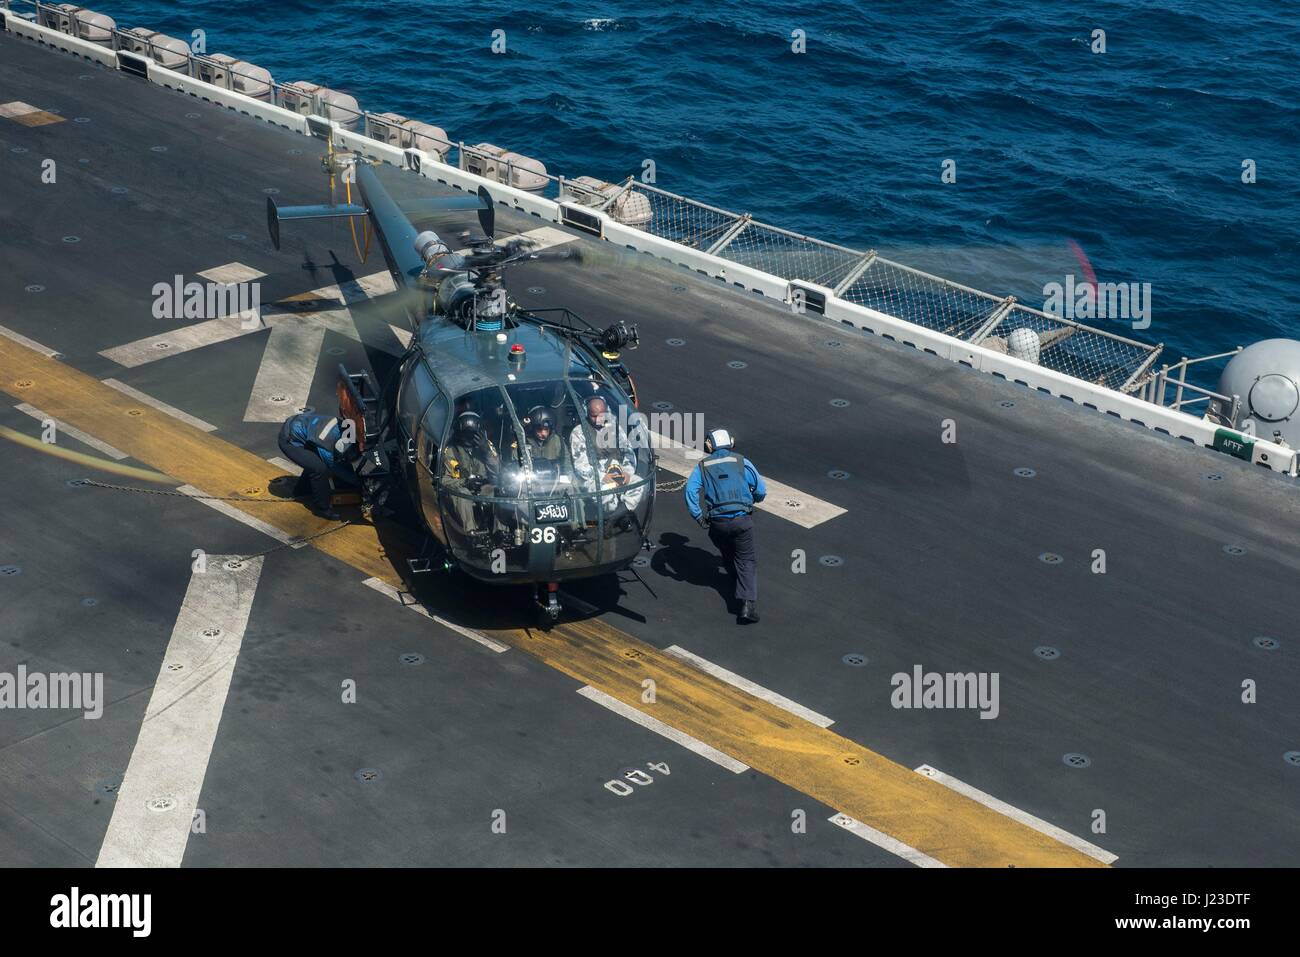 Les marins pakistanais dans un hélicoptère Aerospatiale Alouette III Seagull se préparent à décoller de l'envol de l'USN Wasp-classe d'assaut amphibie USS Makin Island 22 janvier 2017 dans le golfe d'Aden. (Photo de Clark Lane /US Navy par Planetpix) Banque D'Images